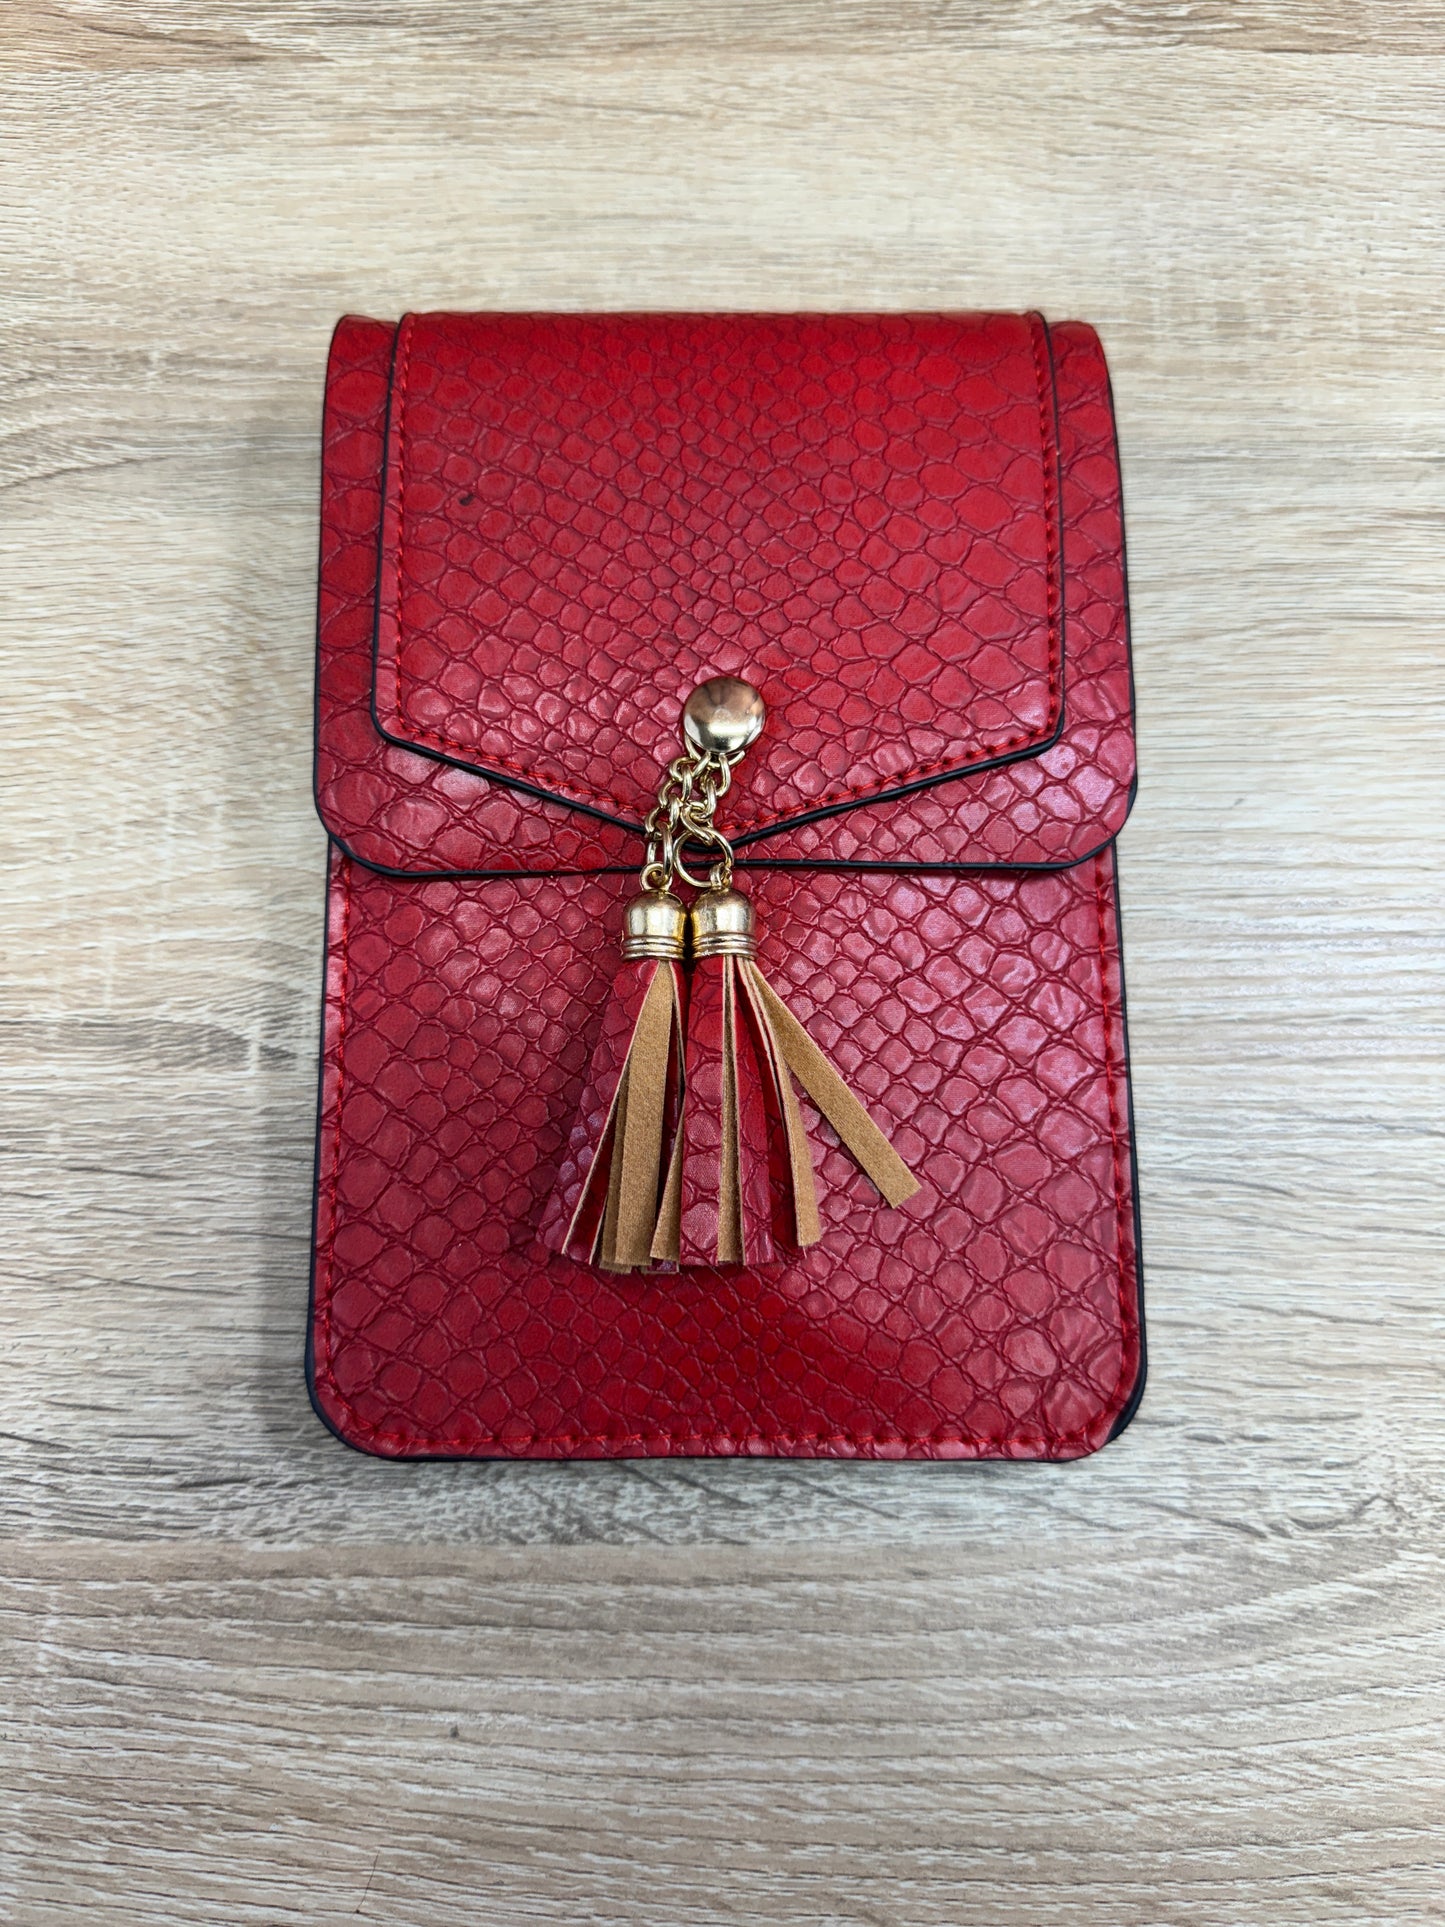 Crossbody Cell Phone Bag - Red Snakeskin